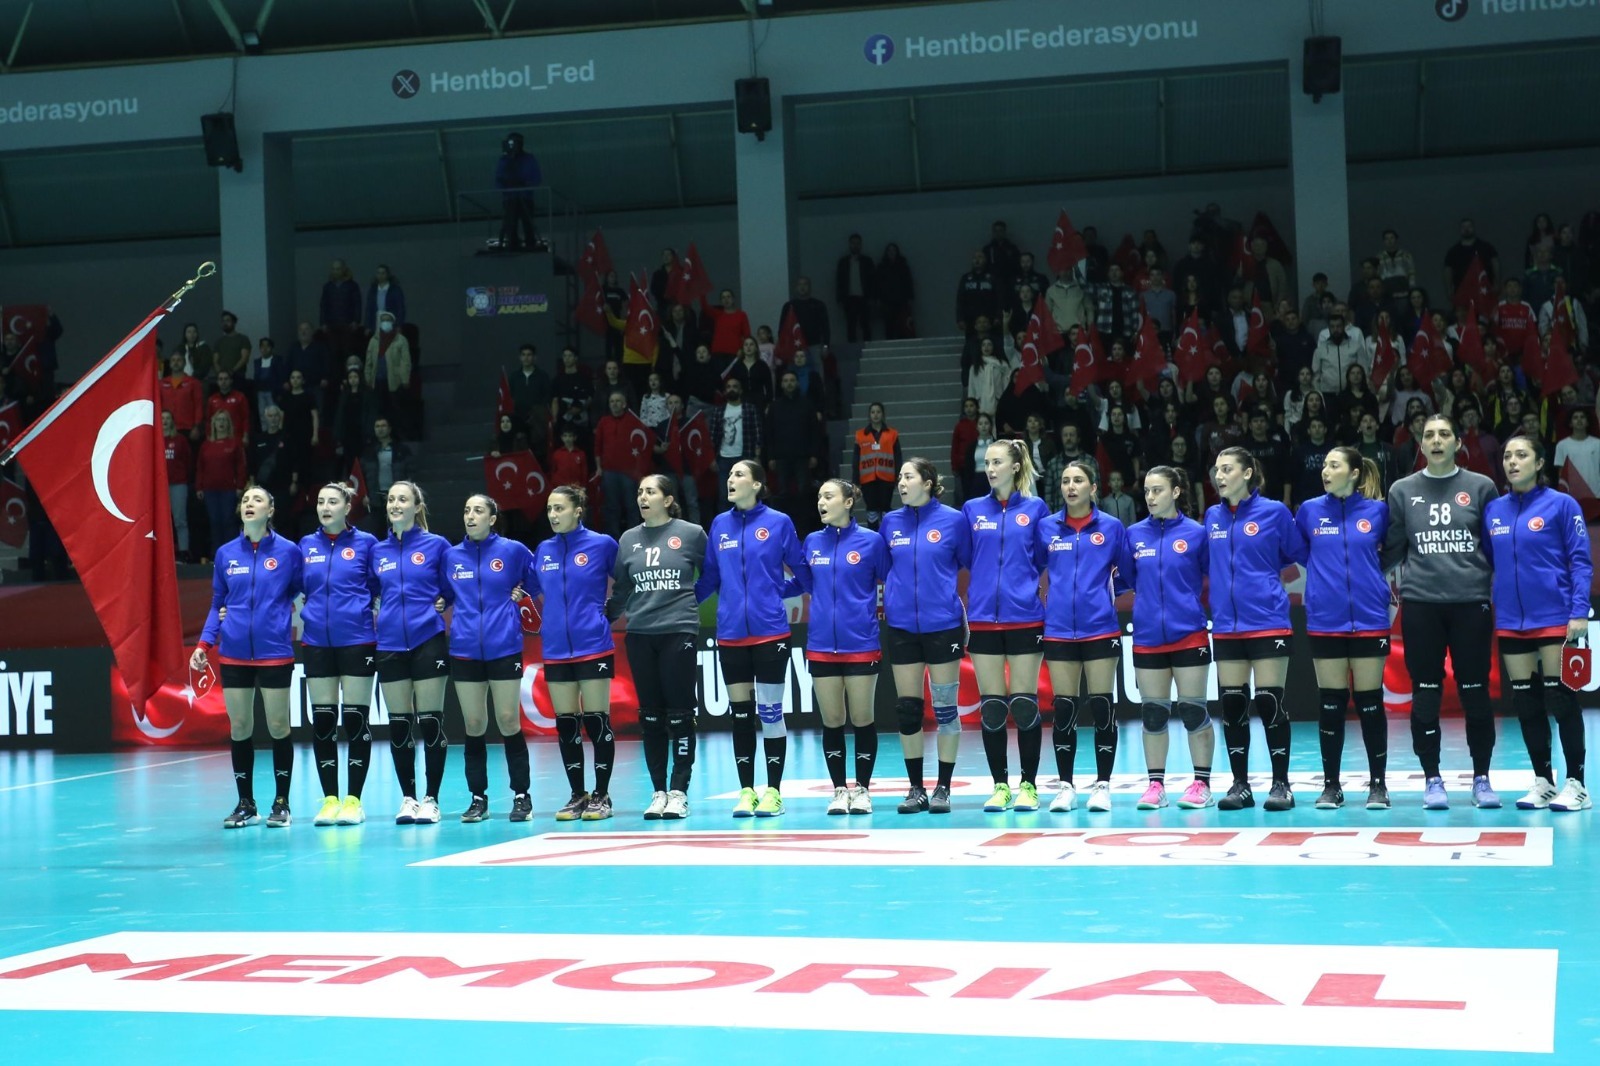 Hentbolda uluslararası başarı! Avrupa Kadınlar Hentbol Şampiyonası Antalya'da düzenlenecek